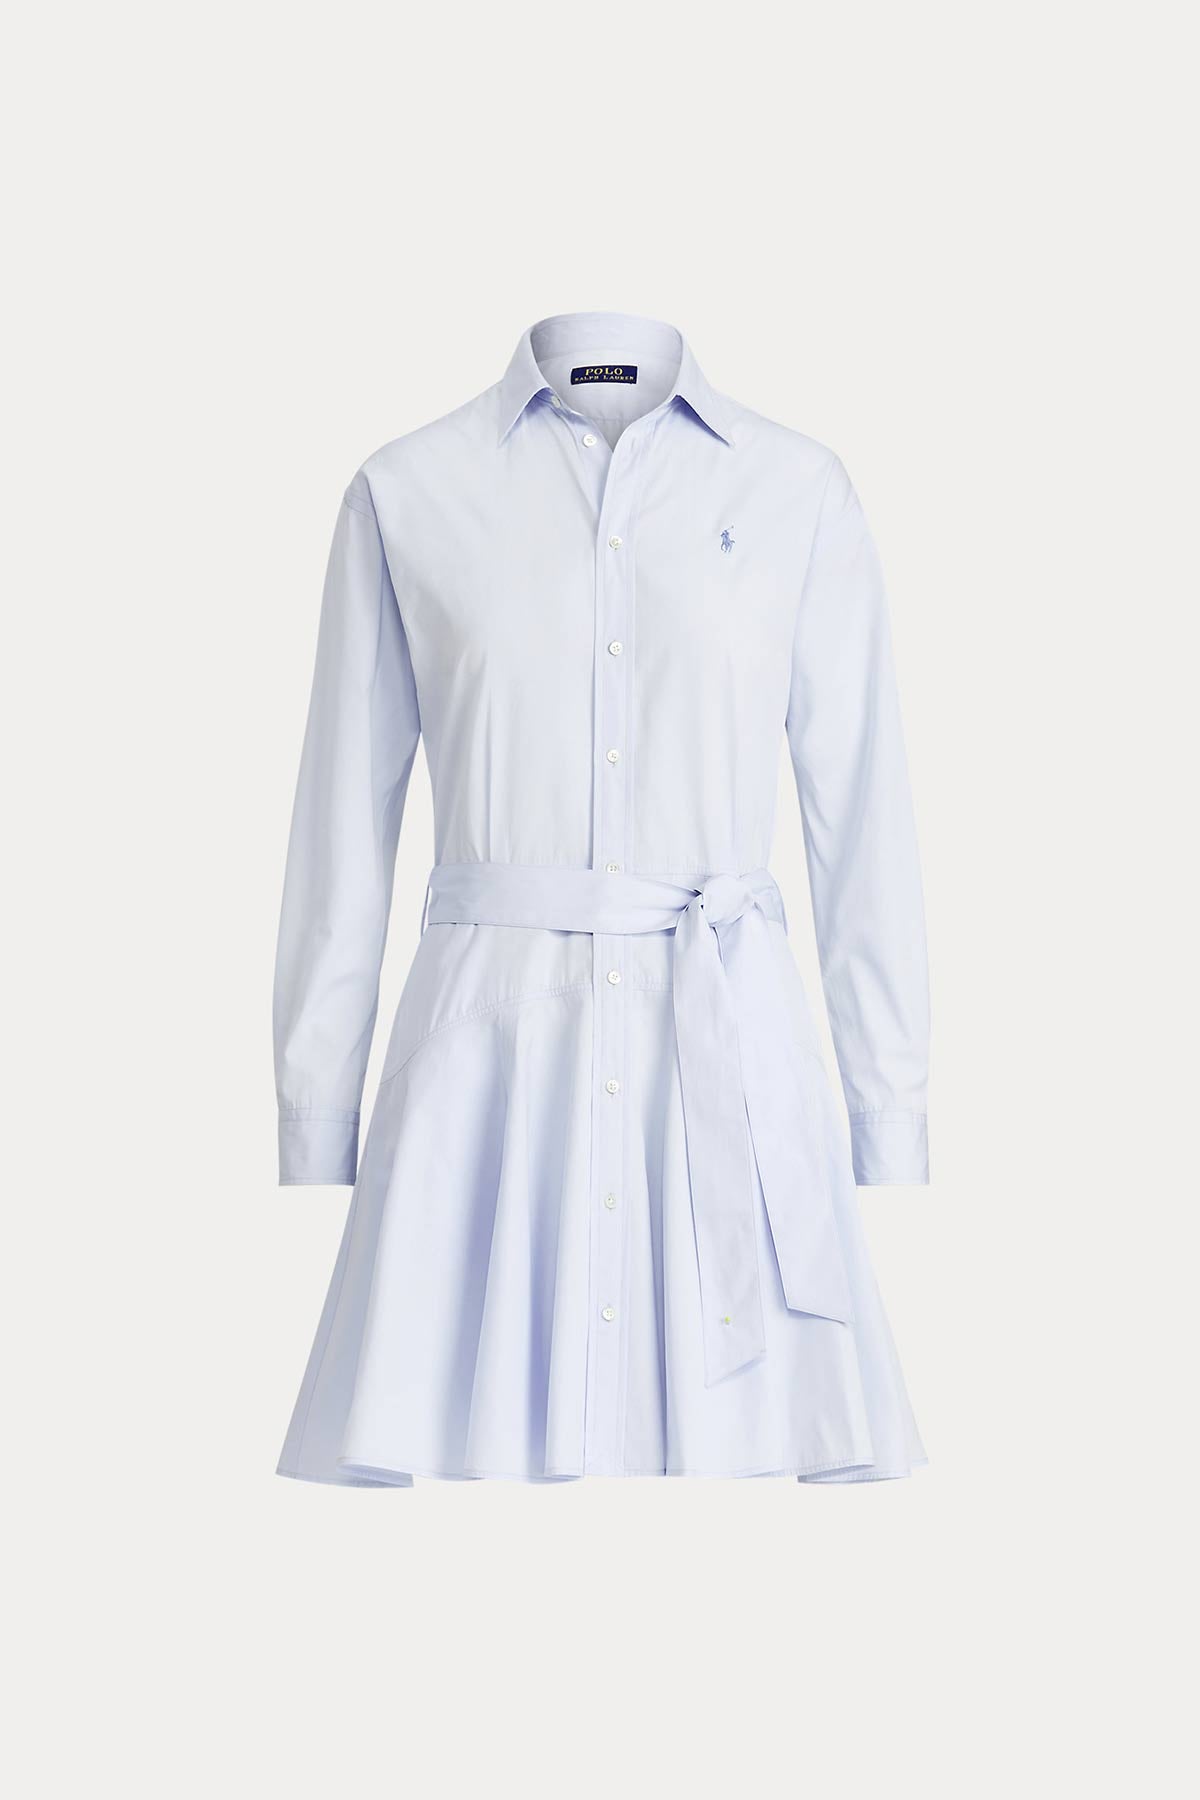 Polo Ralph Lauren Diz Üstü Belden Kuşaklı Gömlek Elbise-Libas Trendy Fashion Store